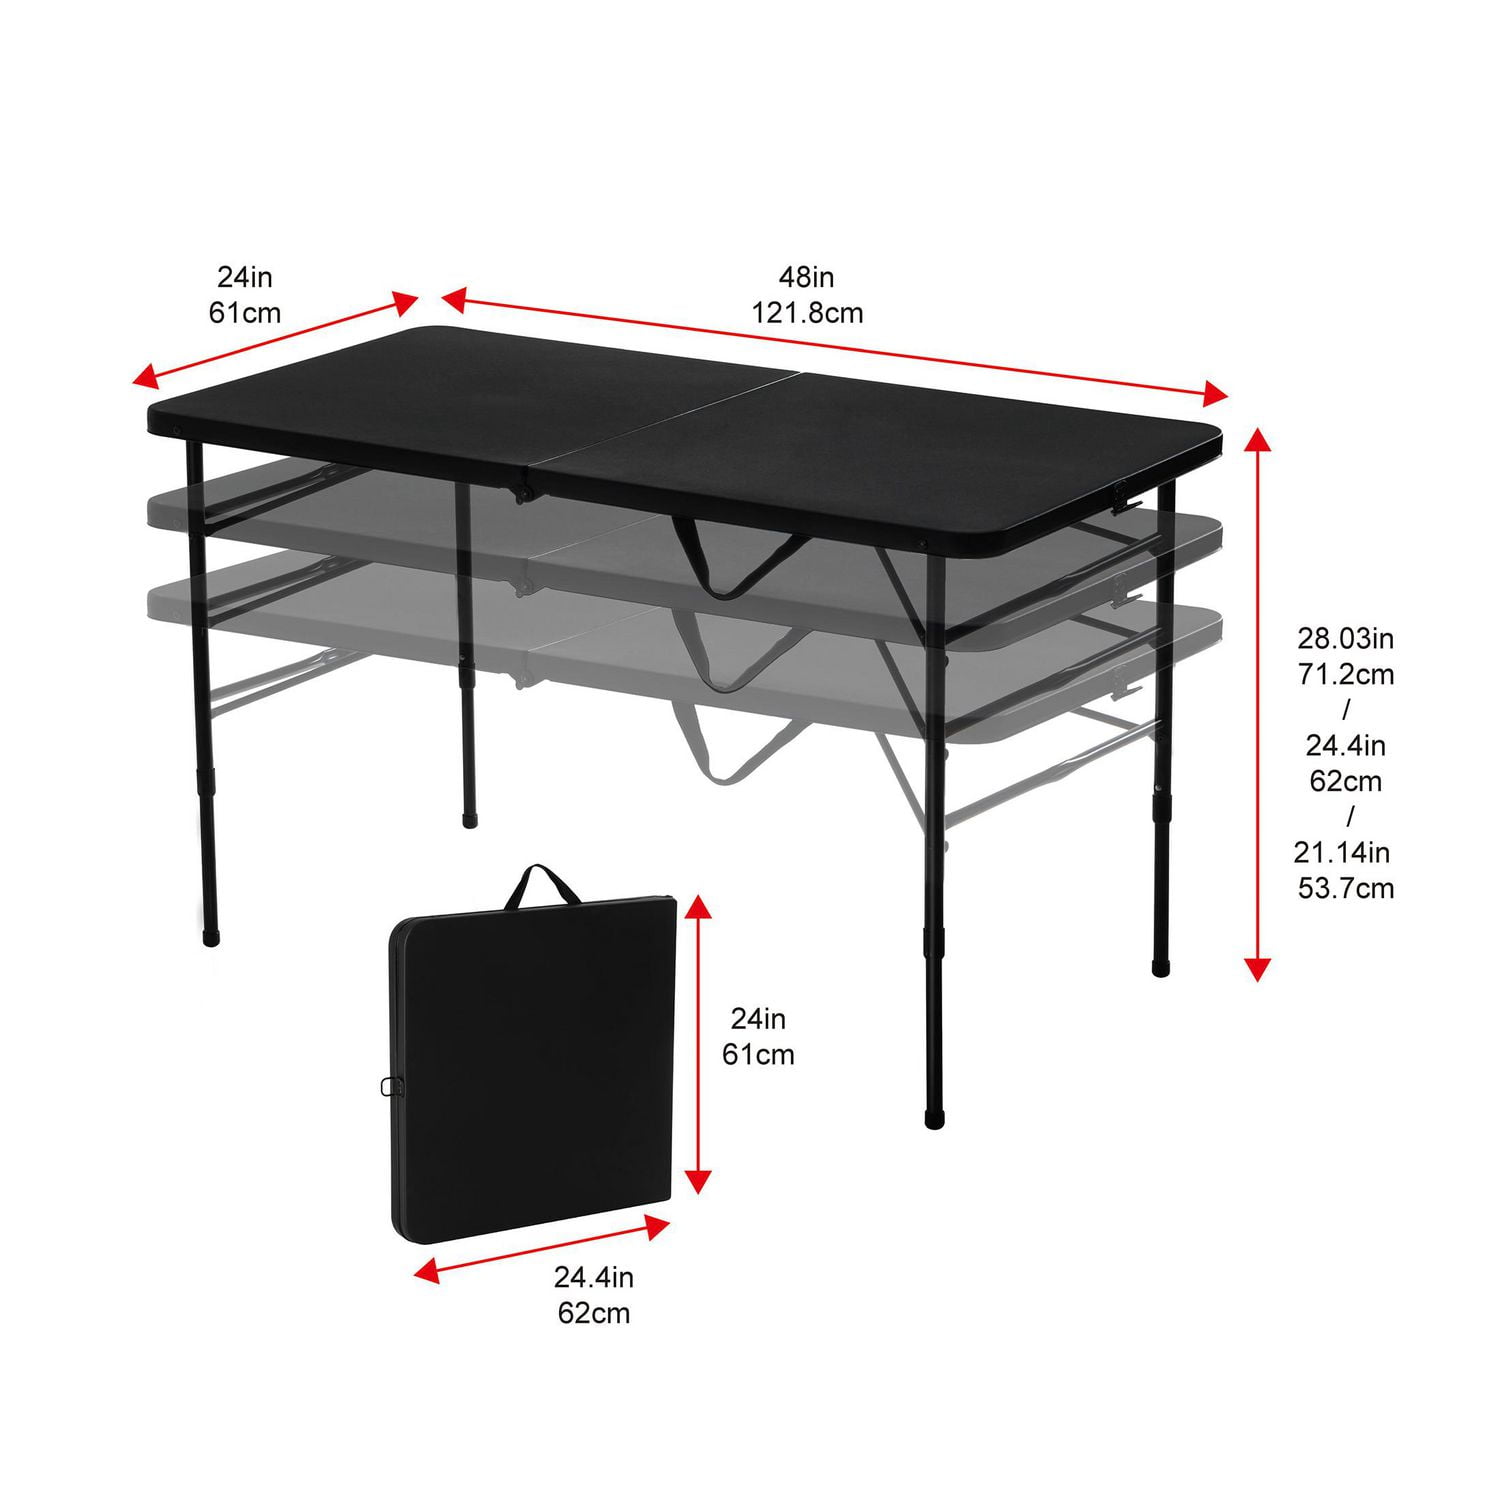 Mainstays Adjustable Height Table, 20 x 40 